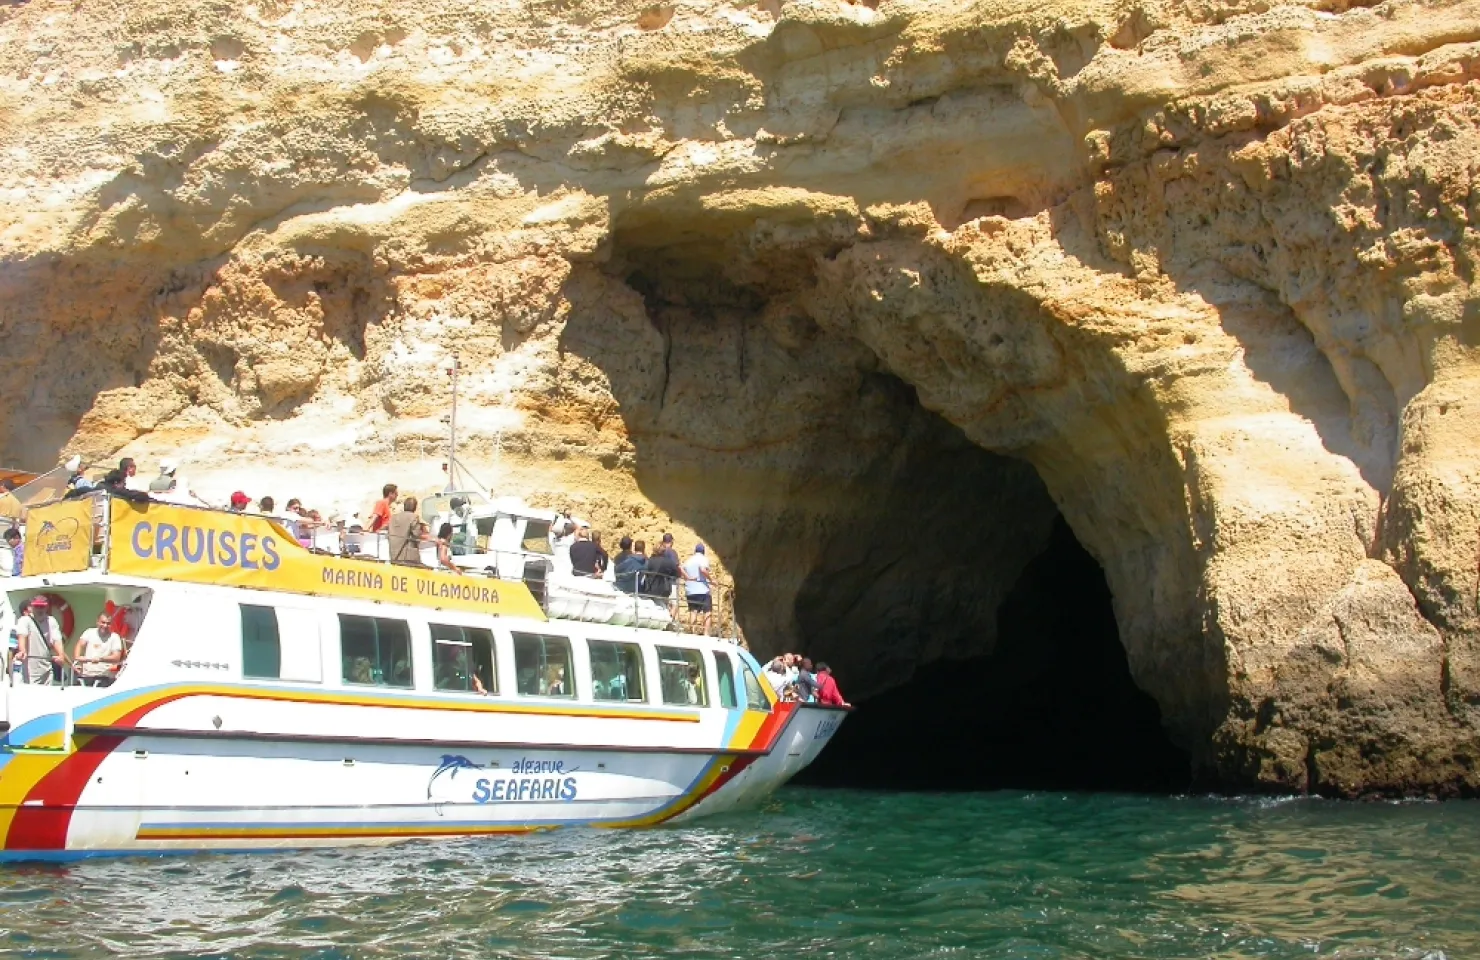 Algarve Sea Cave Tour - Best Boat Trips